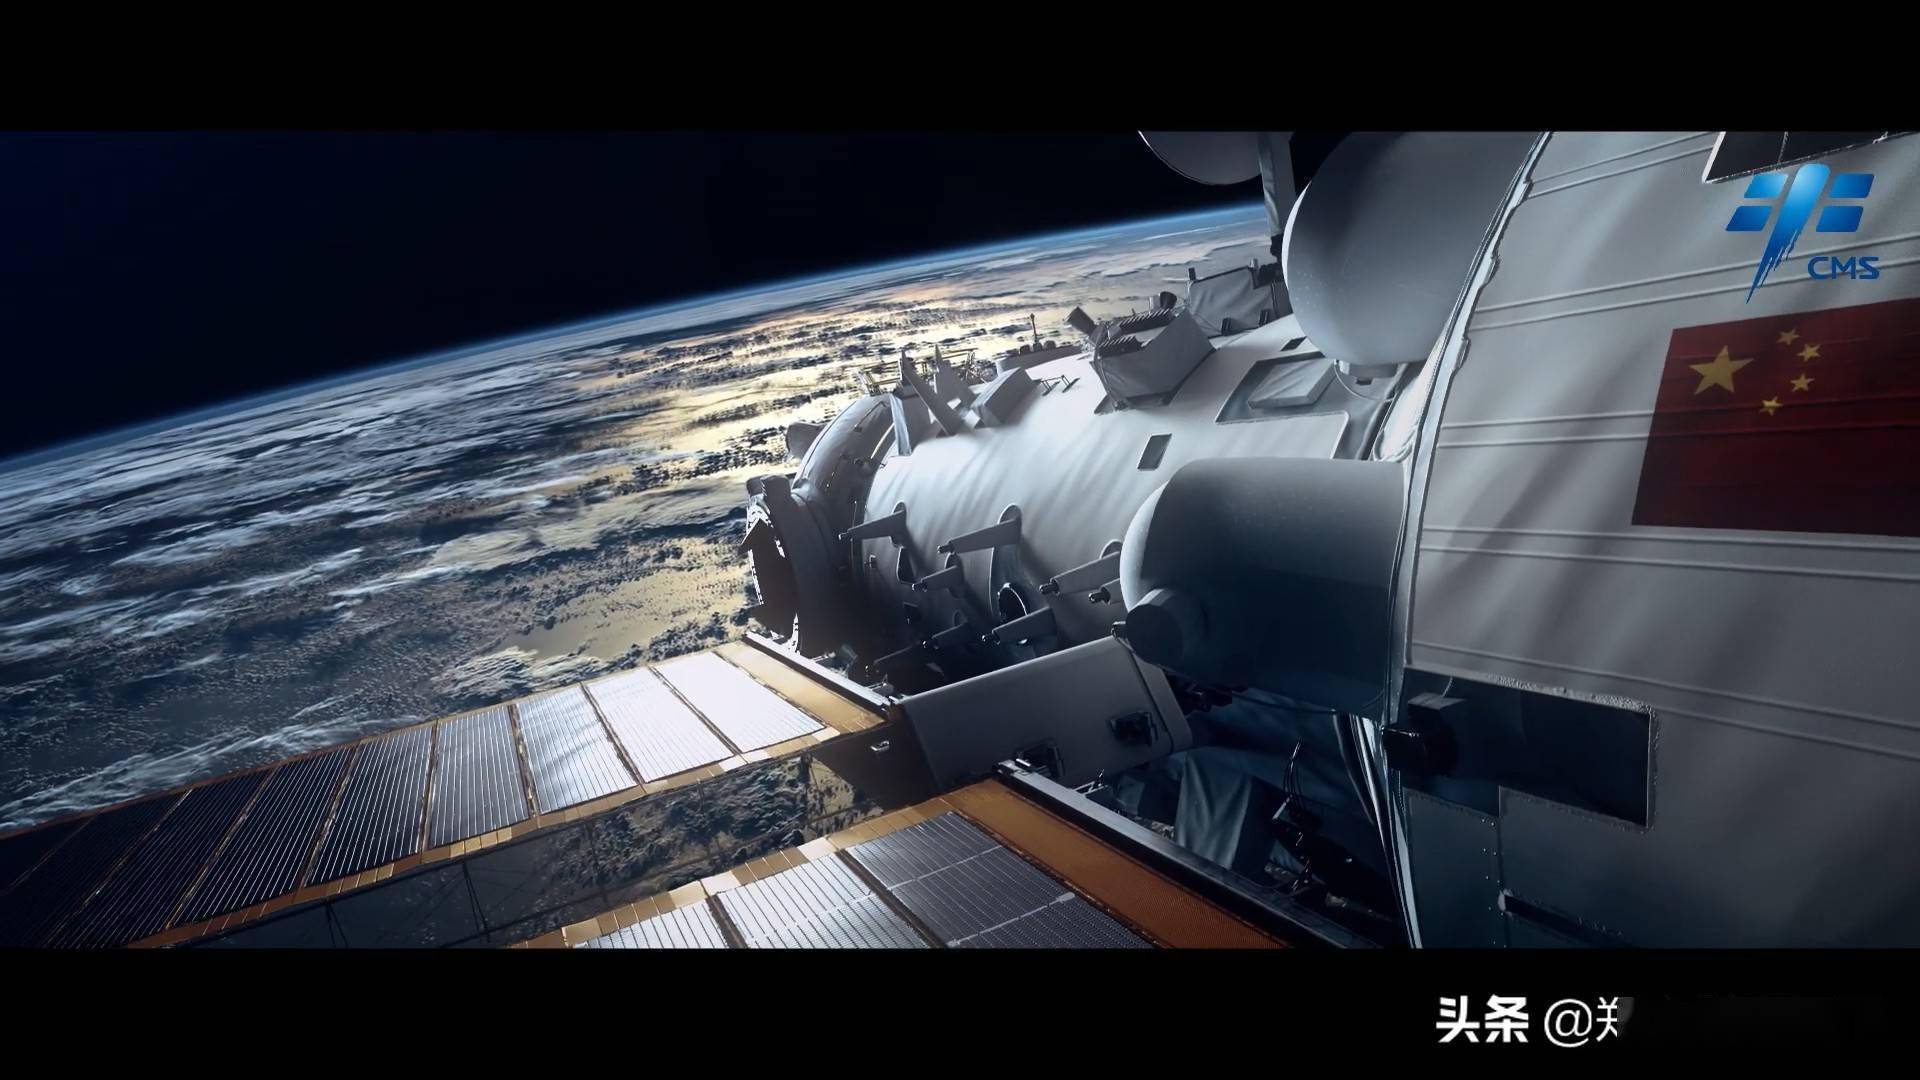 美国砖家:中国空间站能装核弹头轰炸地球!为反华脑子都进水了?